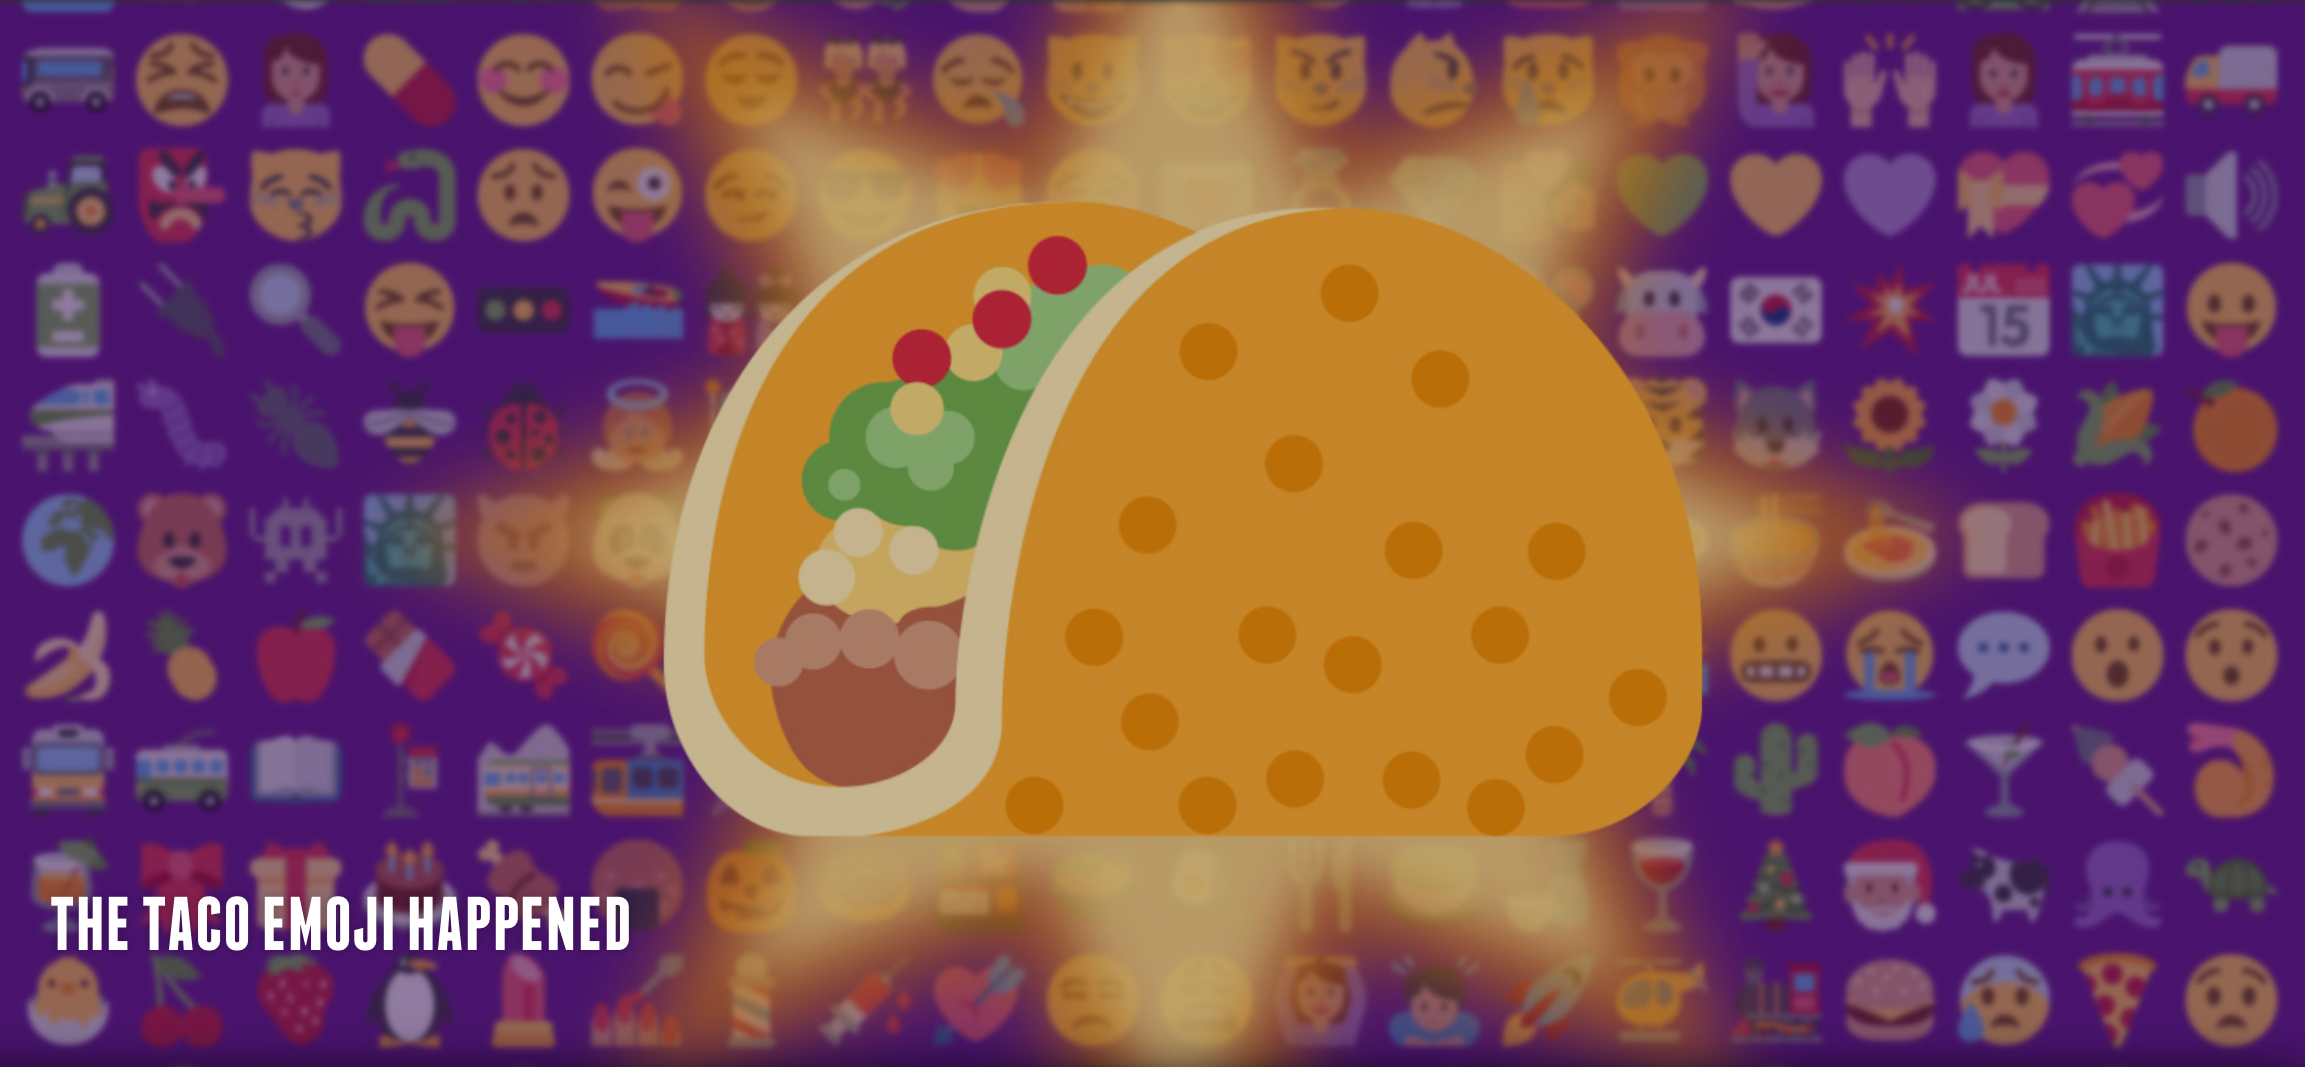 From Taco Emojis to Pancakes On Fleek: Fast Food Brands Target Teens On Social Media [Video]